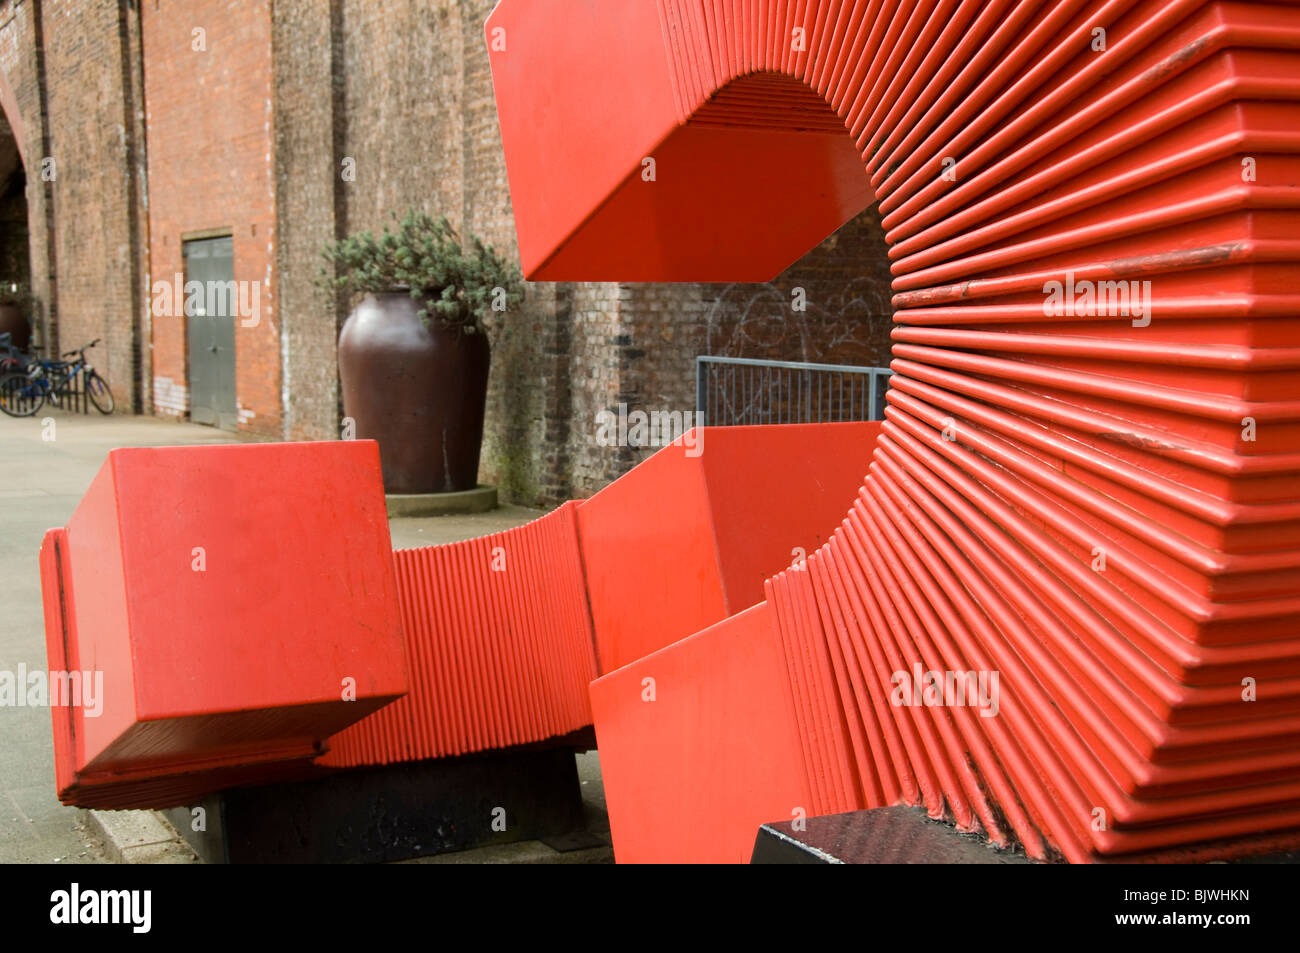 La génération de possibilités, une sculpture de Paul Frank Lewthwaite. Manchester, Angleterre, RU Banque D'Images